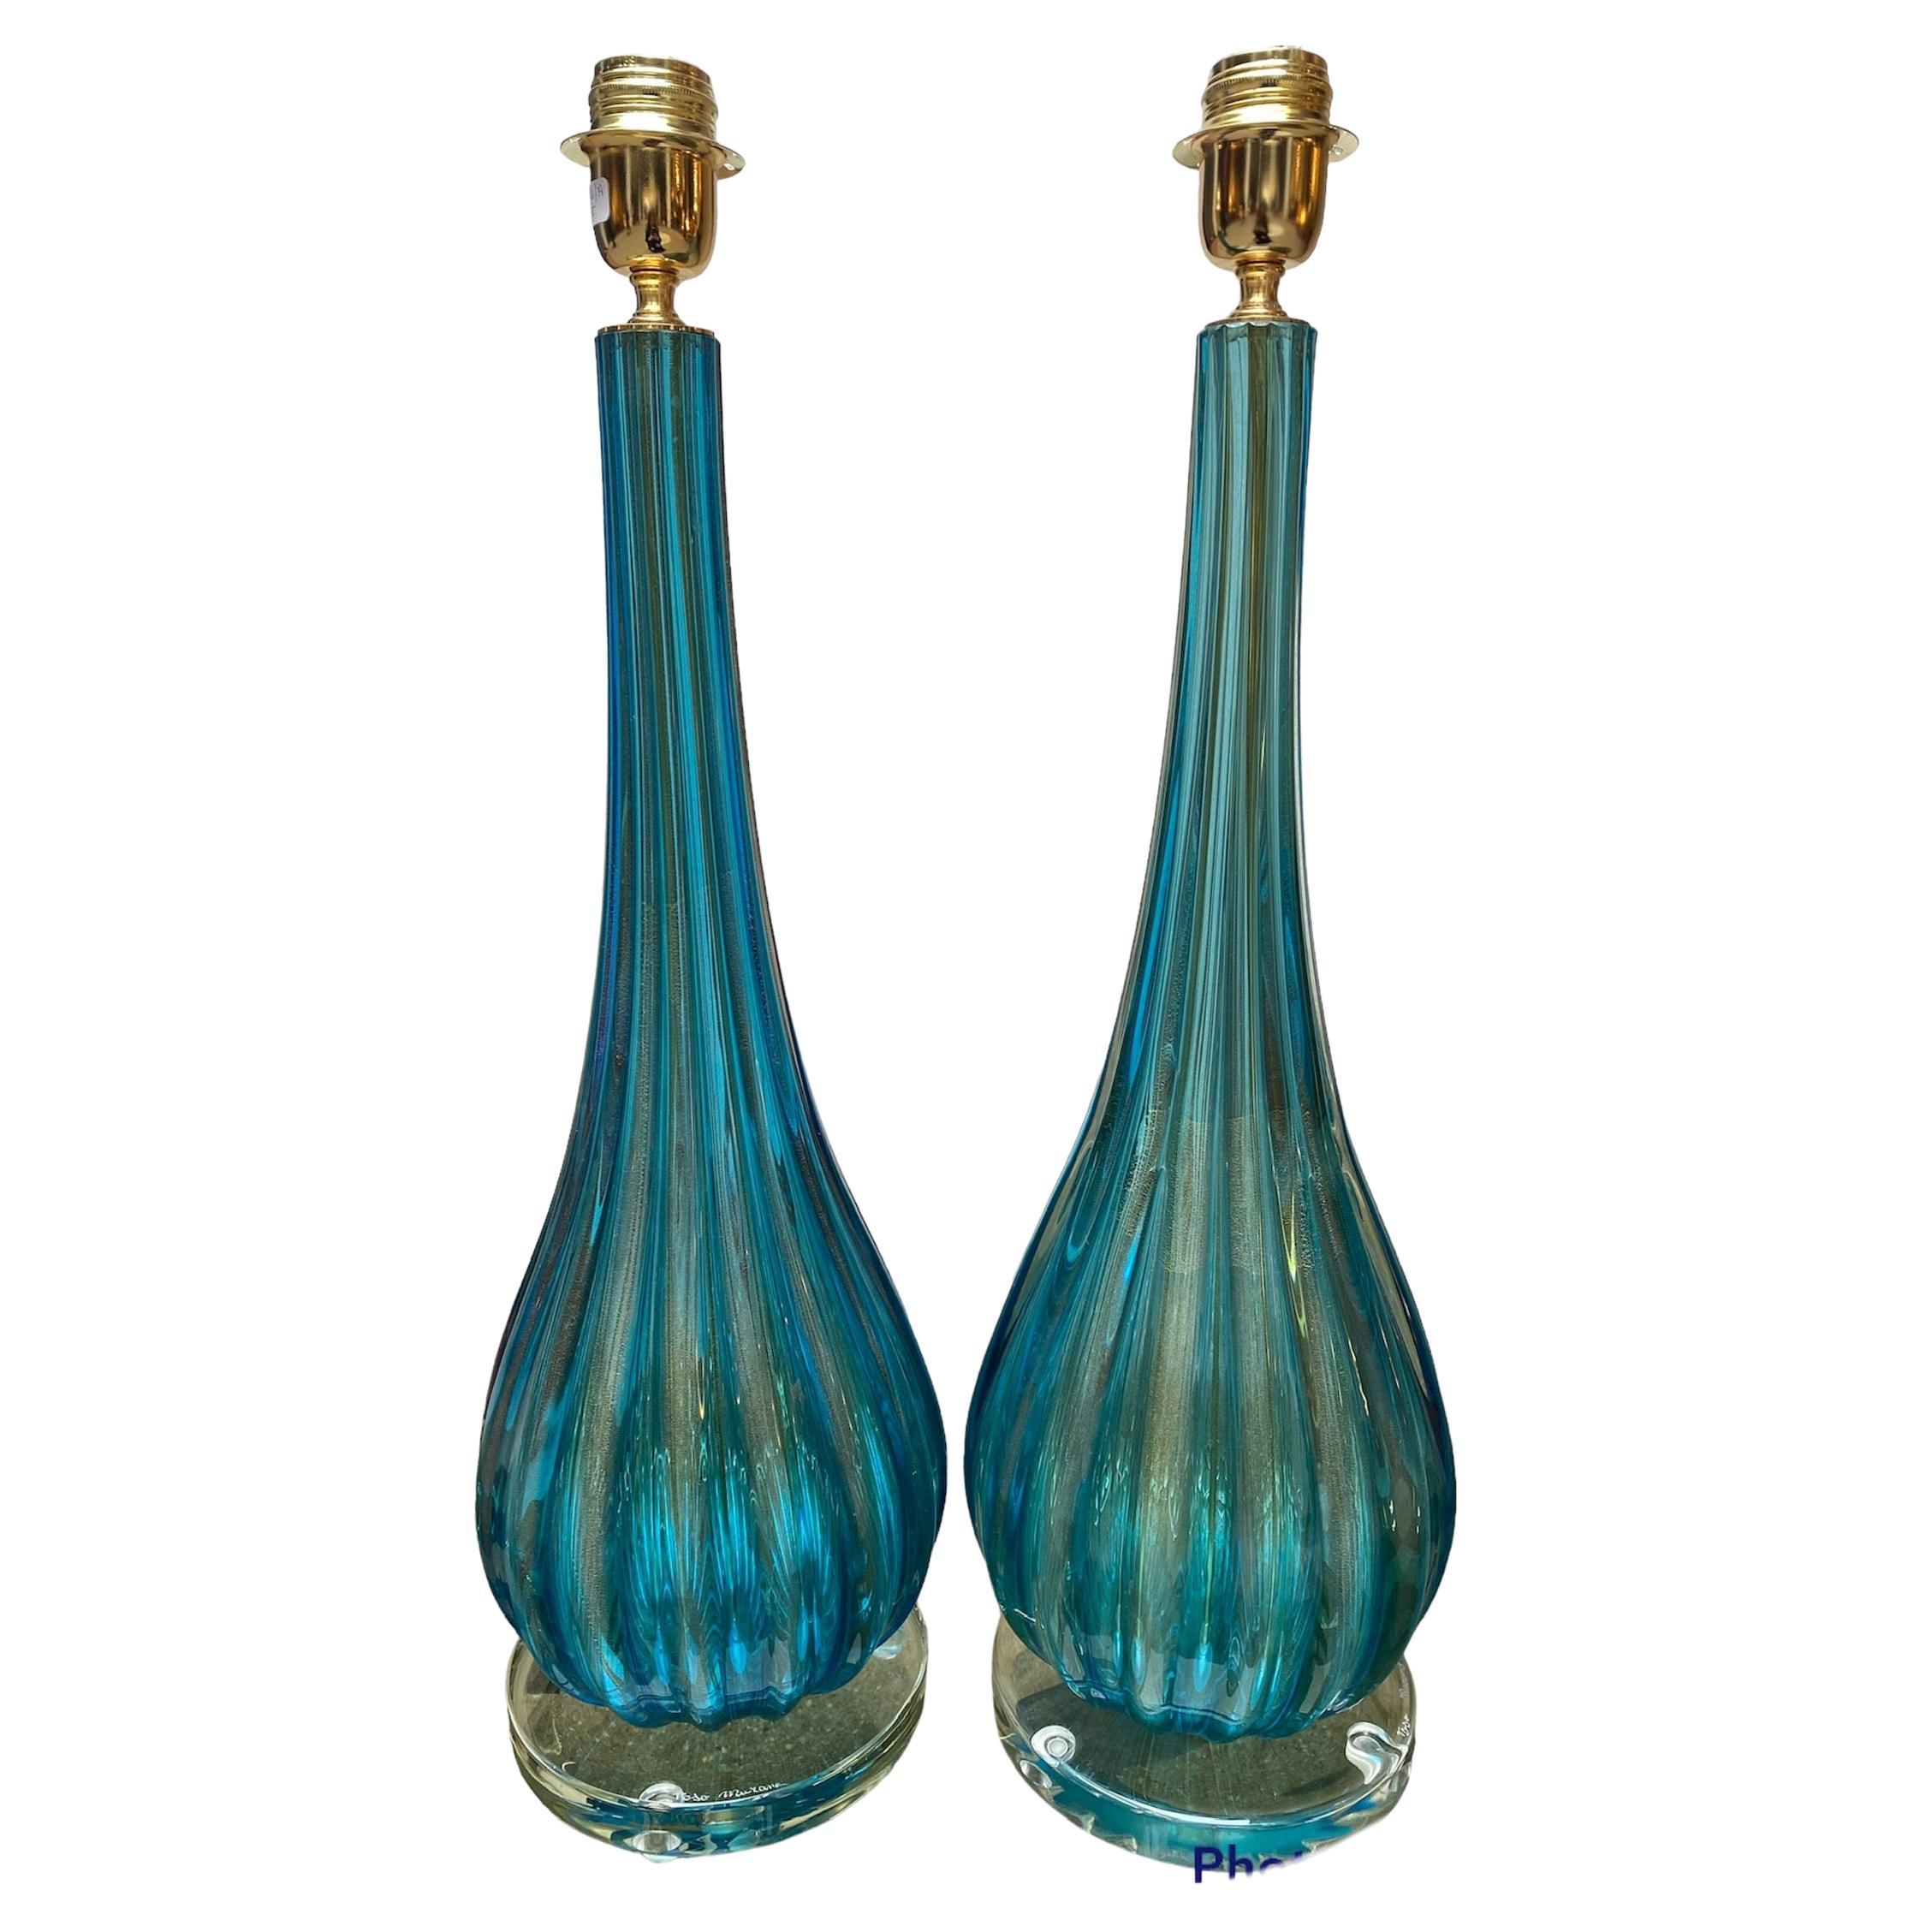 Paar Toso Murano Lampen Murano Glas Blau und Gold